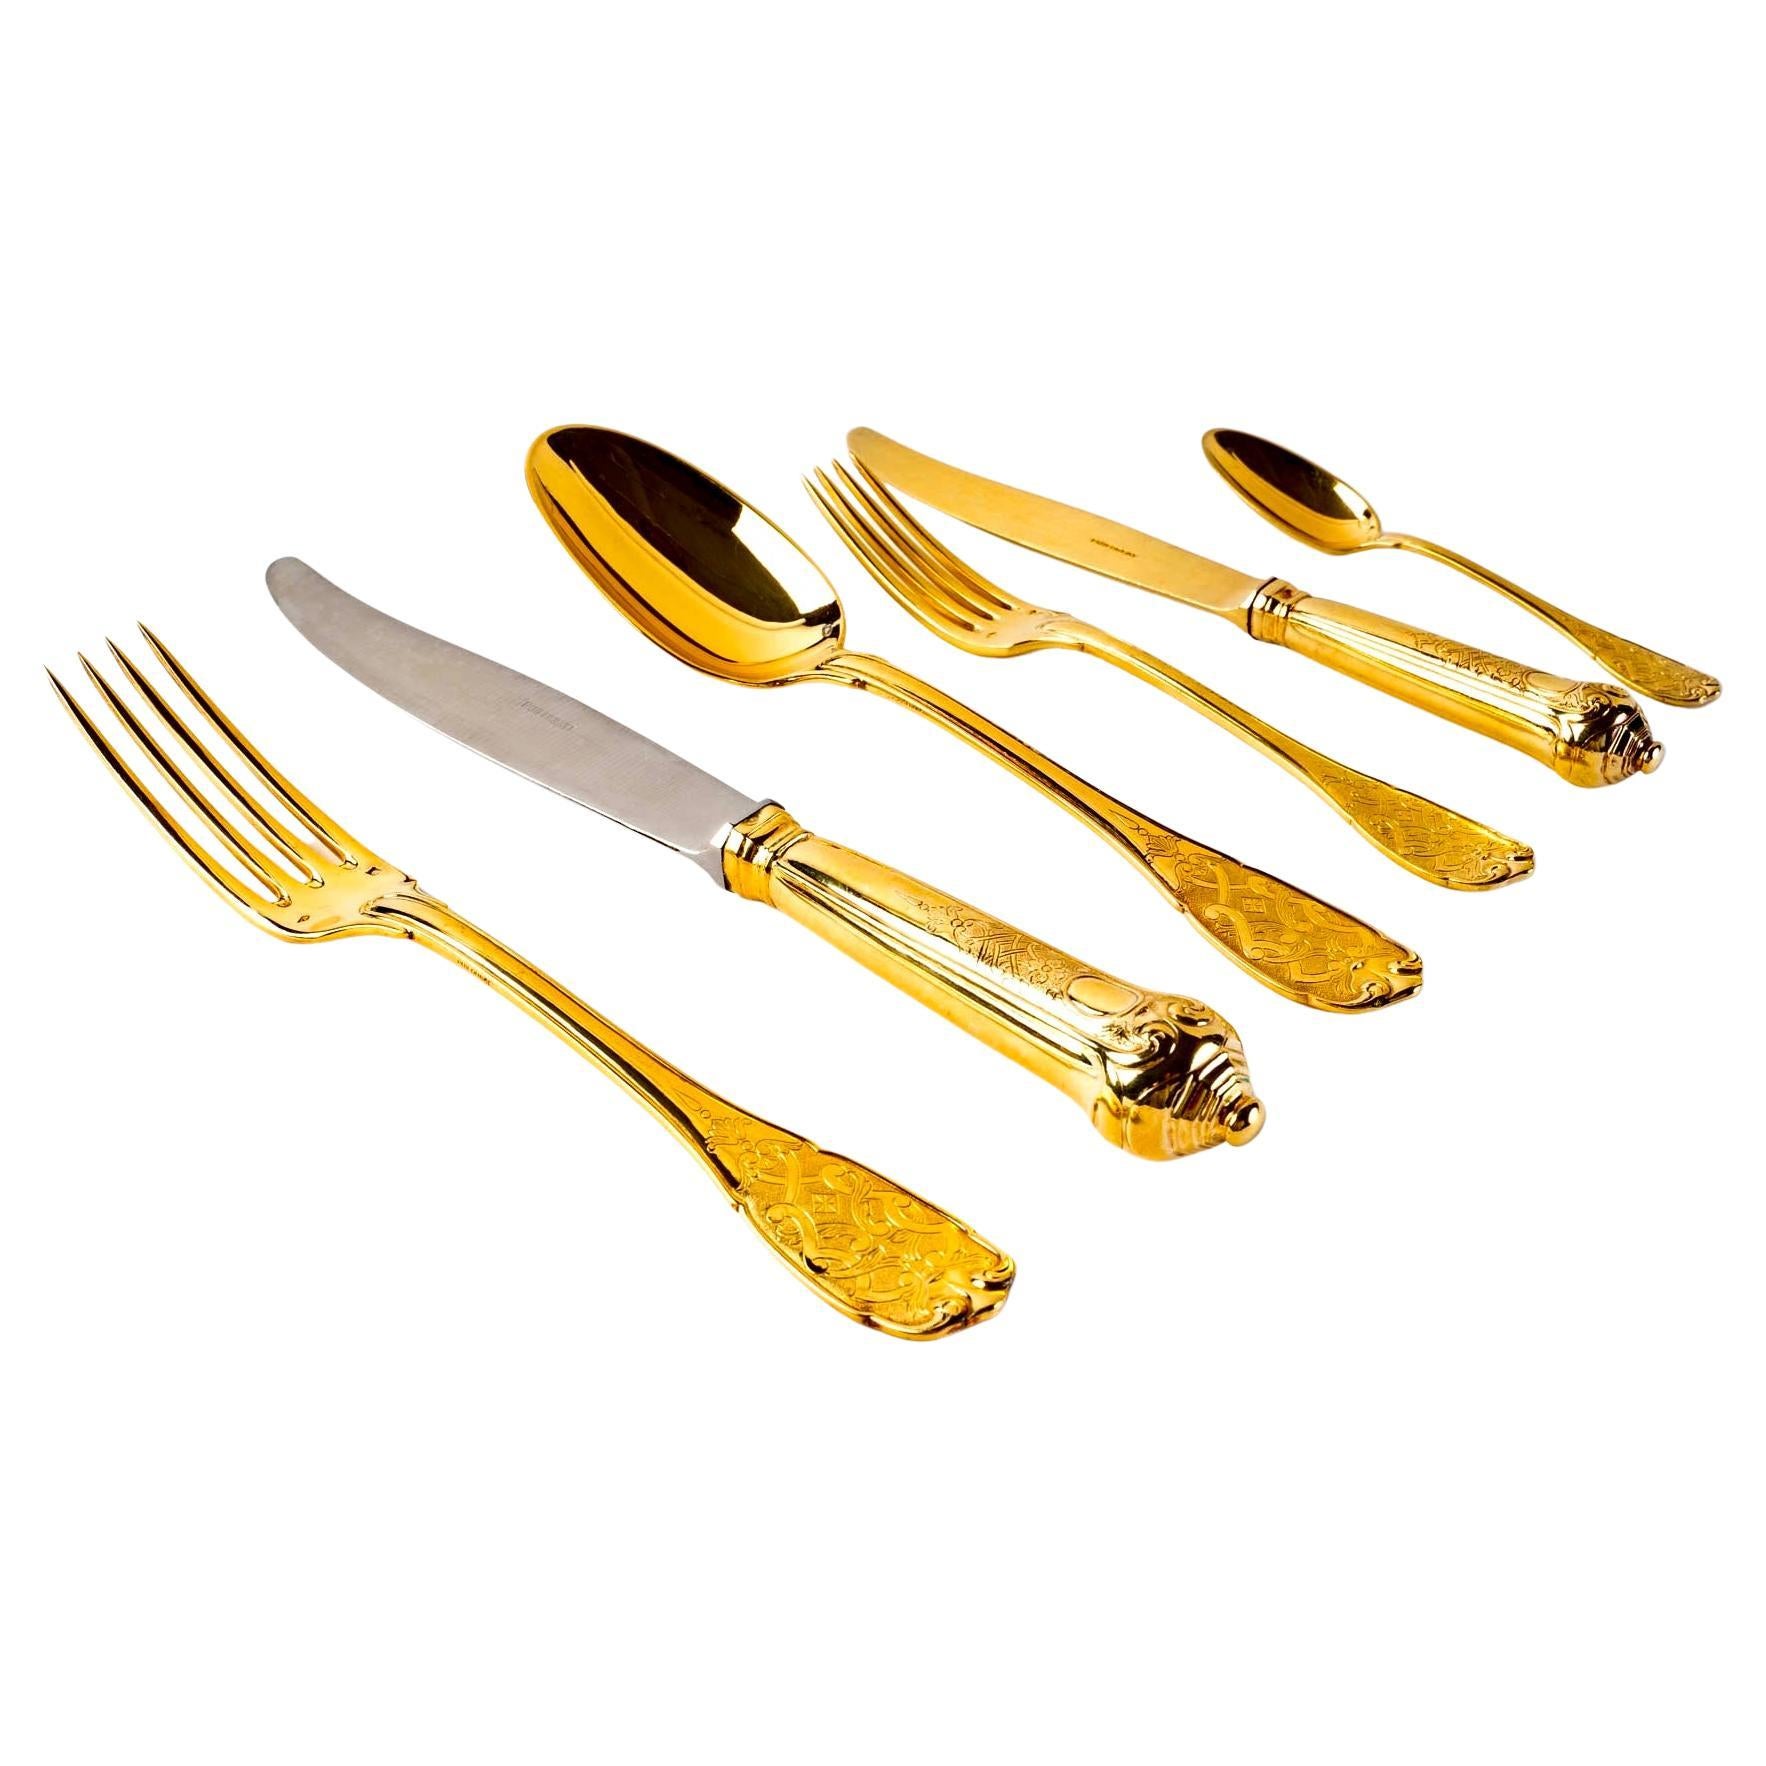 Puiforcat, Elysée Vermeil Gold Sterling Silver Flatware Cutlery Set, 70 Pieces